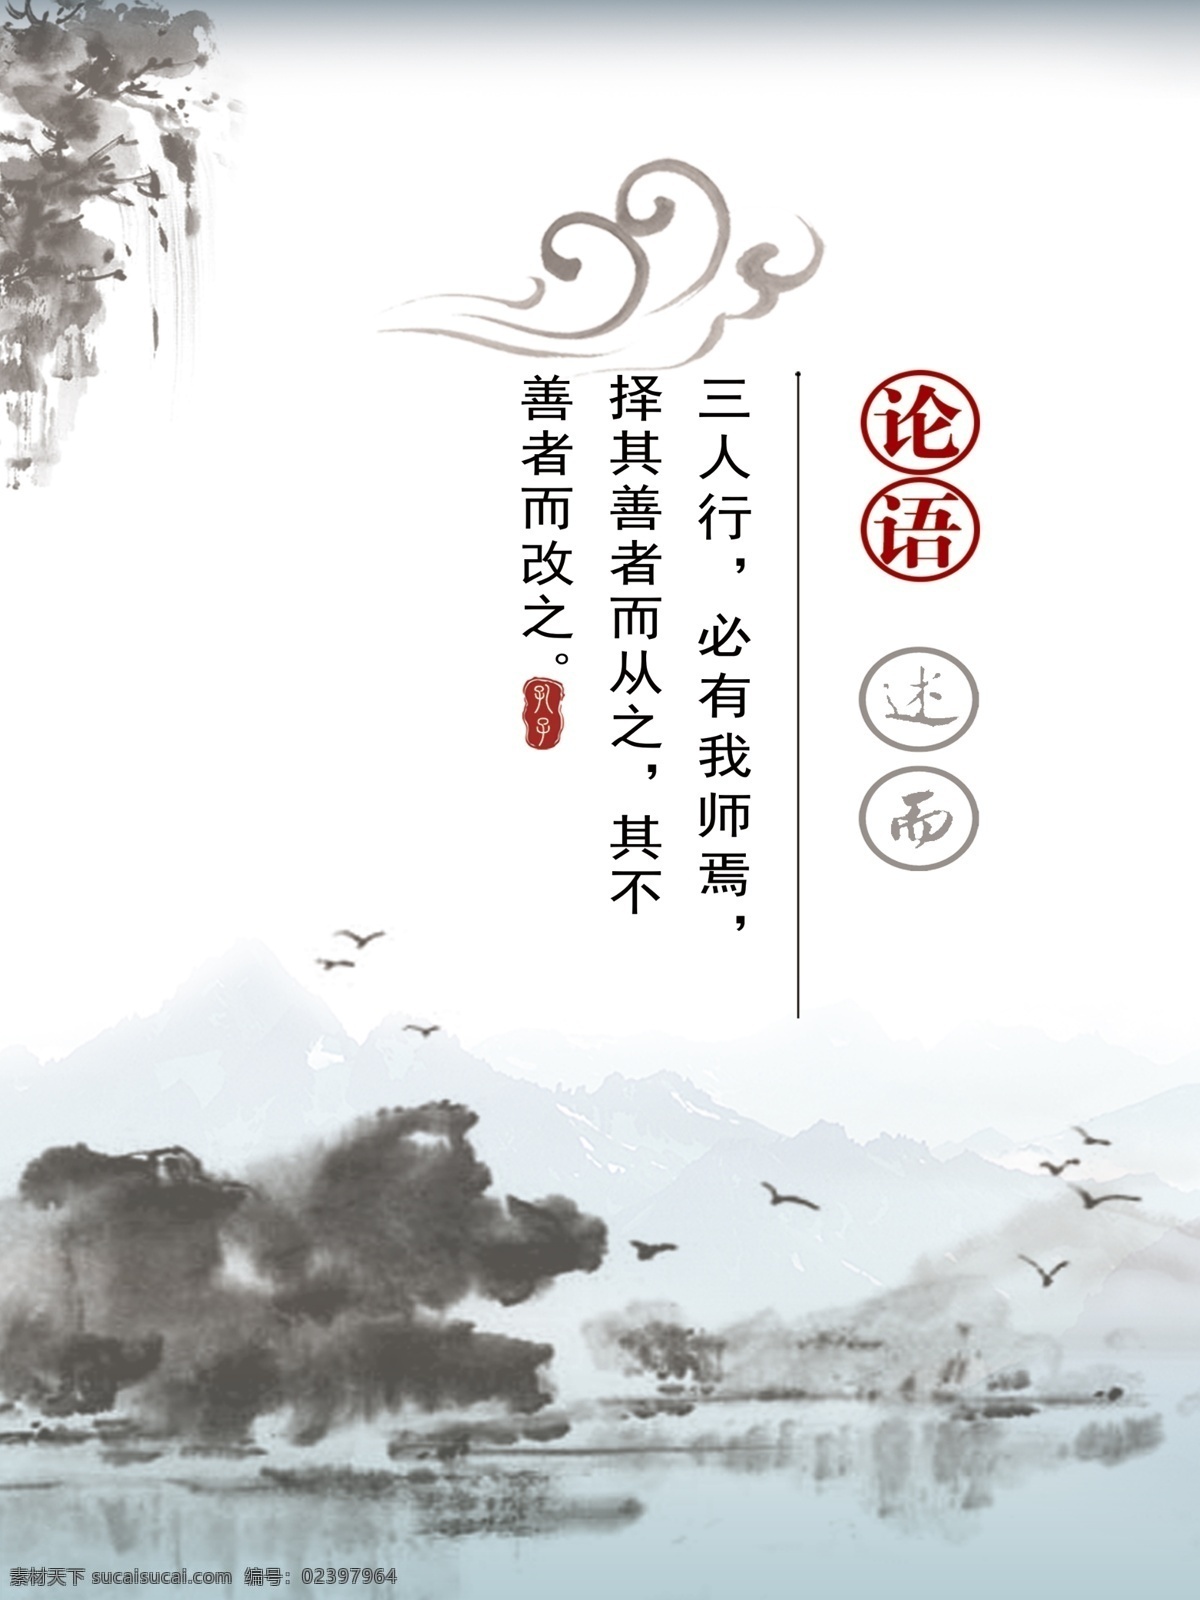 中国 传统文化 艺术 中国风 论语 古代文学 孔子 山水画 中国传统文化 文化艺术 白色